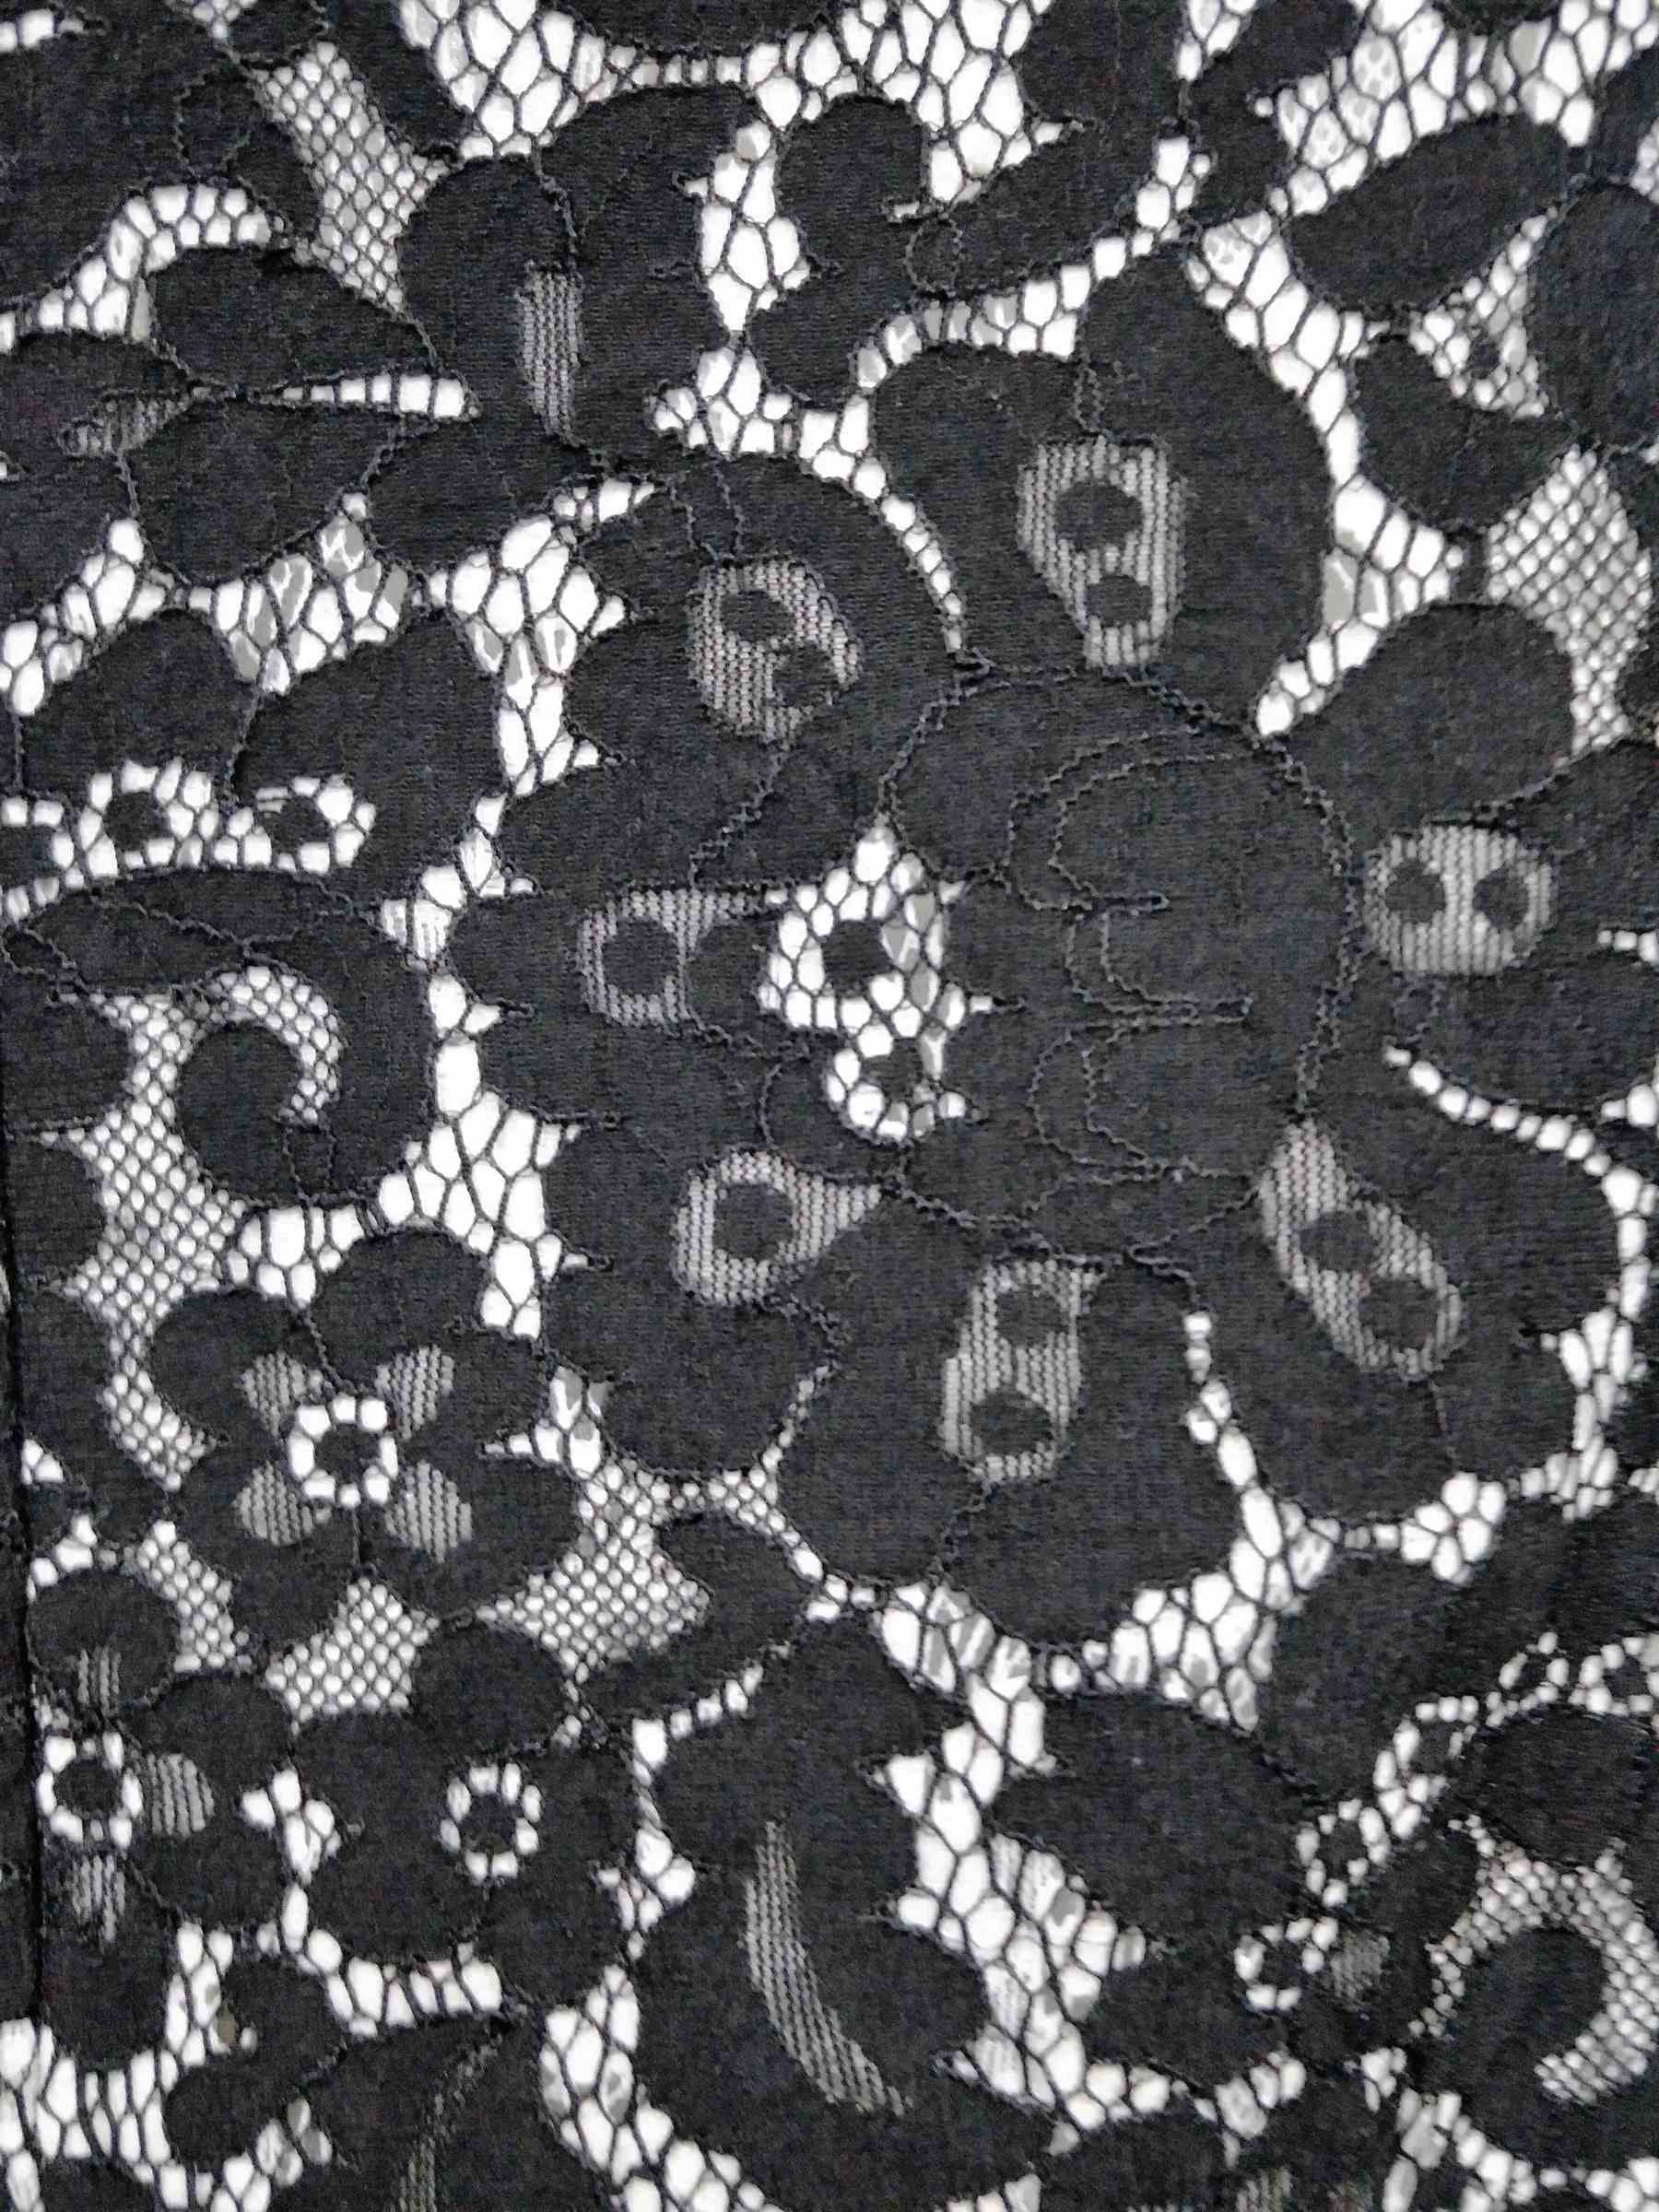 E63305LD-黑白蕾絲刺繡貼片連衣裙-服裝代工 (9).jpg